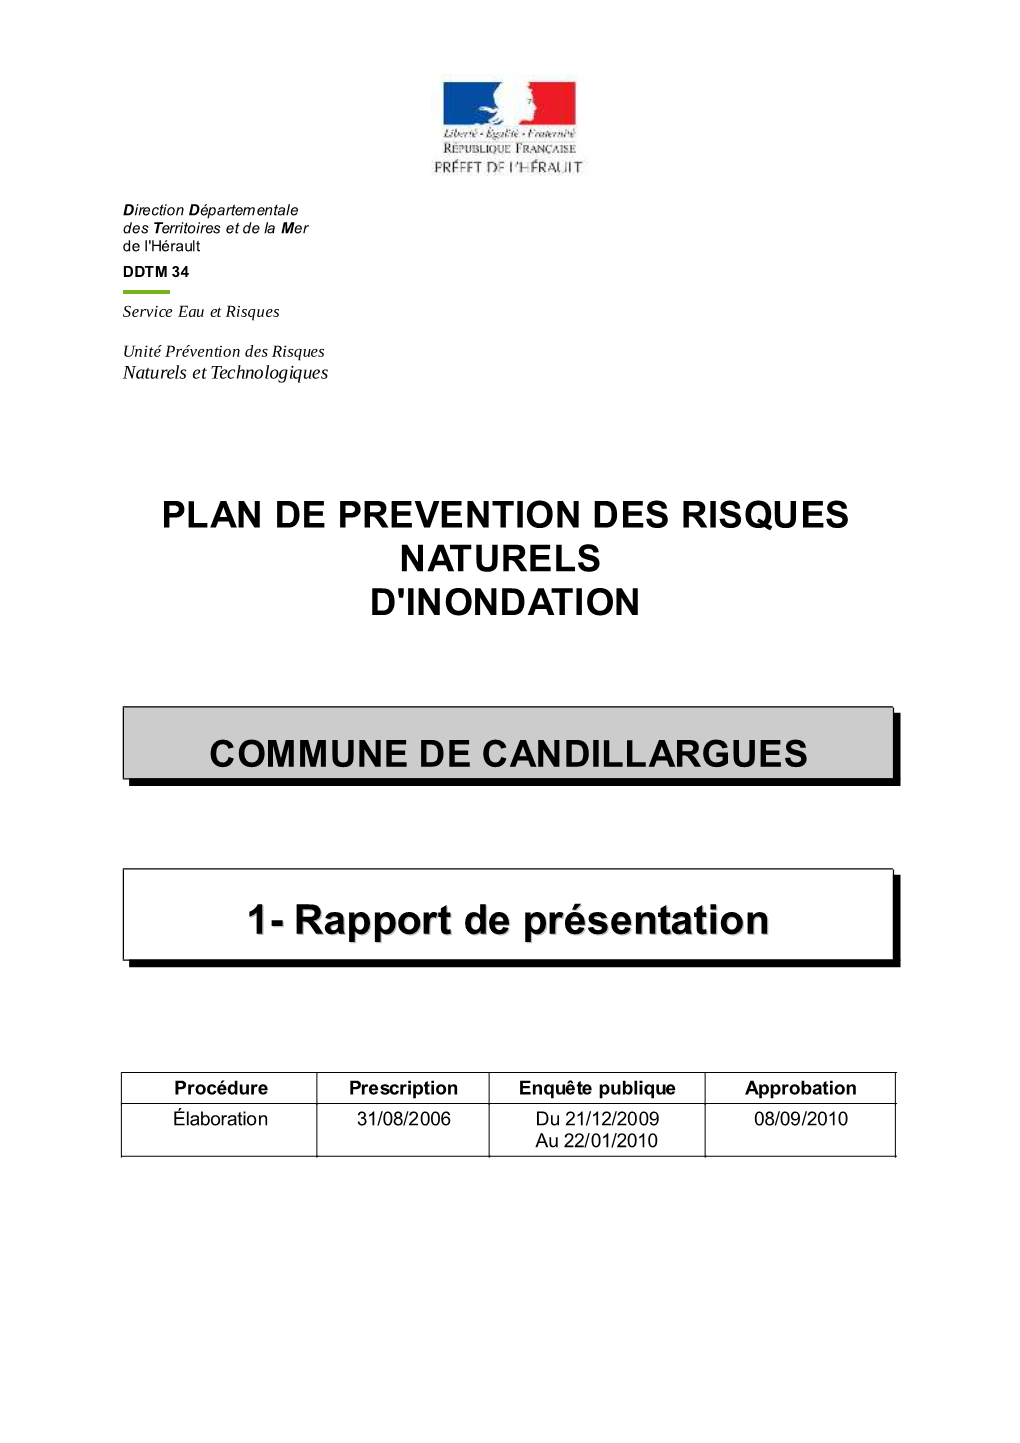 Plan De Prevention Des Risques Naturels D'inondation Commune De Candillargues 1